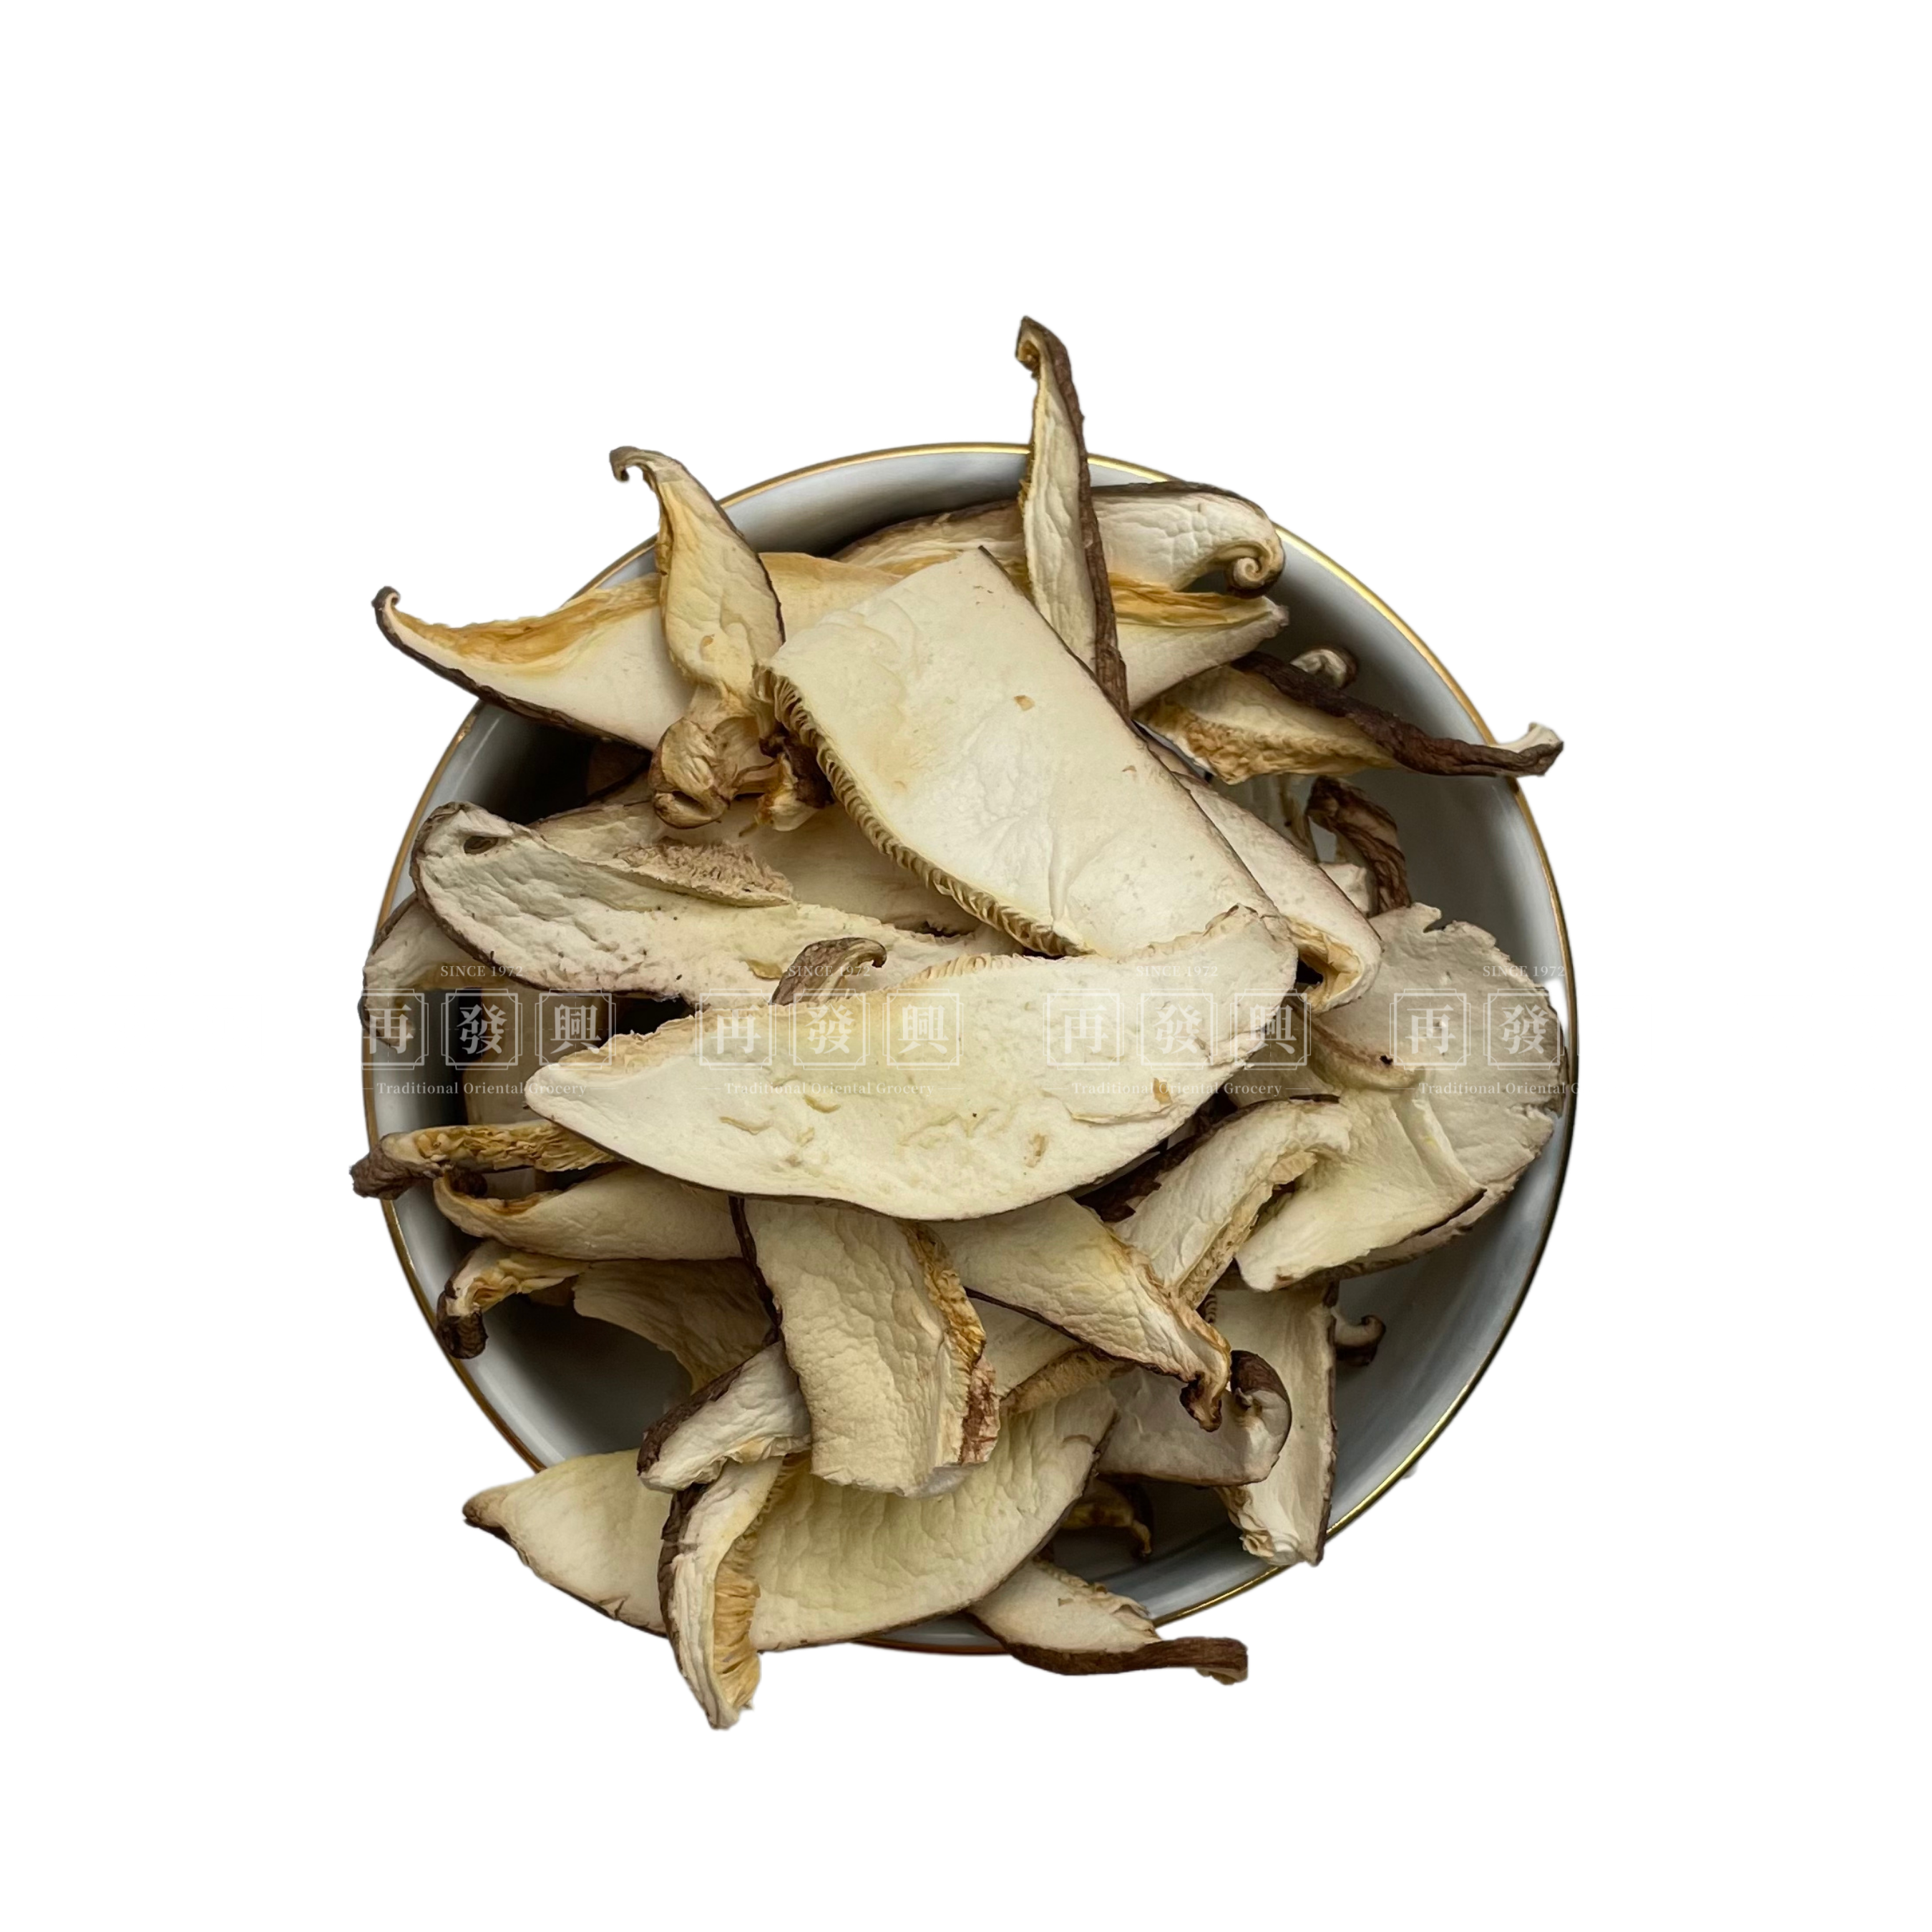 Tea Flower Mushroom Slices 100g